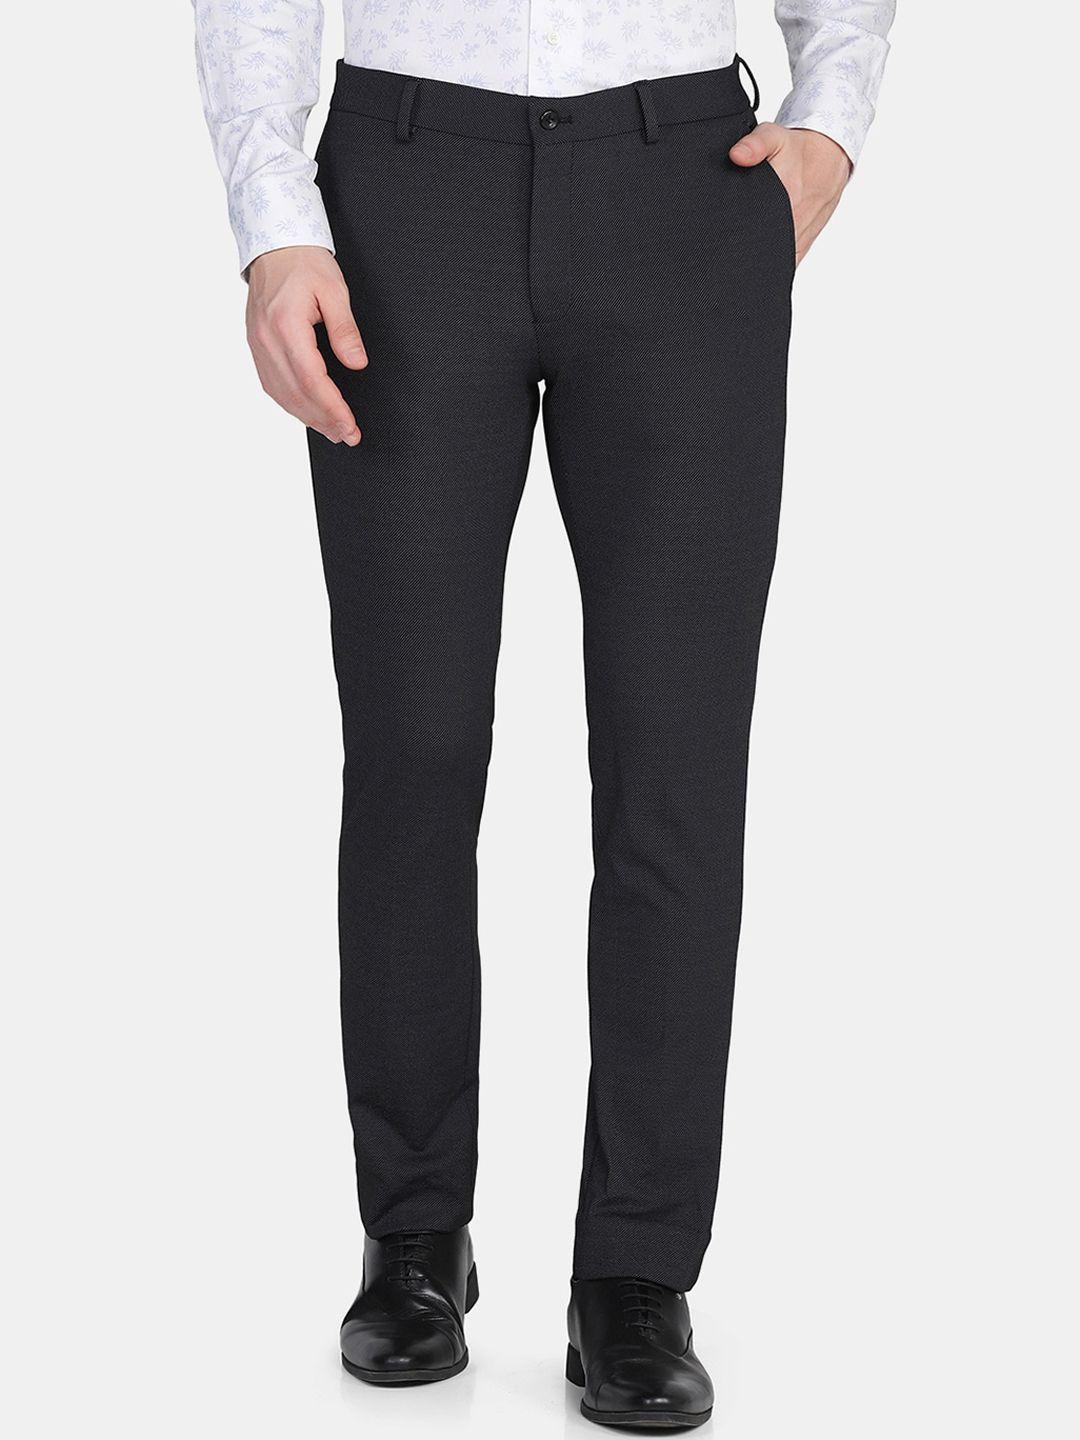 blackberrys-men-black-slim-fit-low-rise-trousers